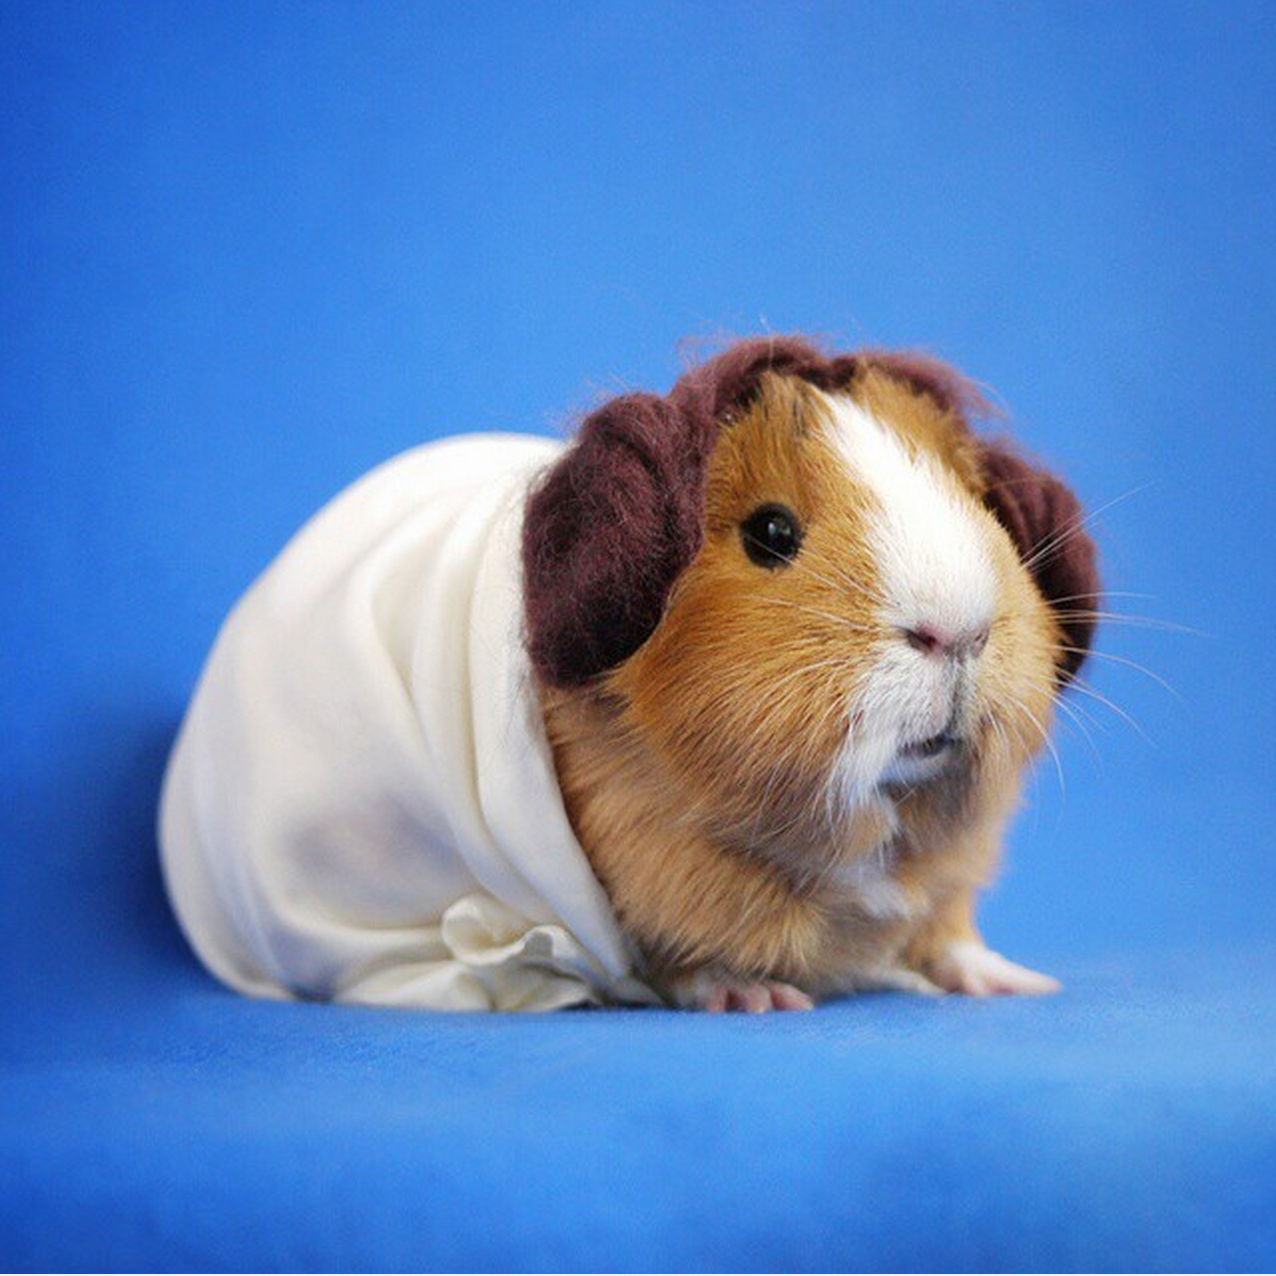 MiniGuineaPig utklädd till prinsessan Leia ur filmen Star Wars.